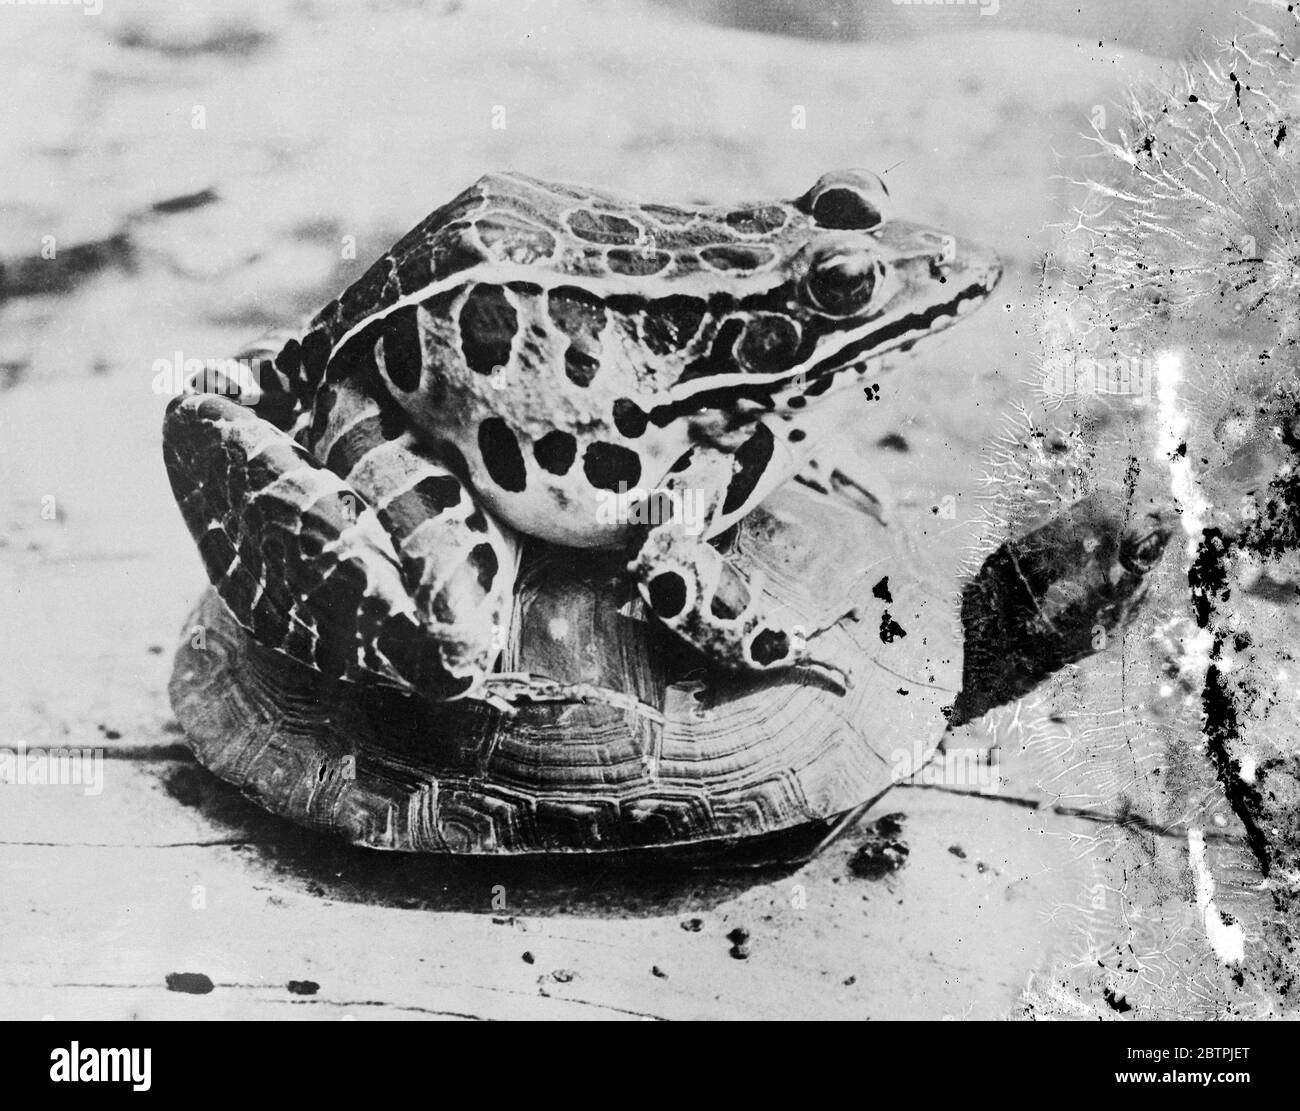 Langsam, aber sicher. Eine entgegenkommende langsam bewegende Schildkröte gibt dem beobachtenden Leopardenfrosch genügend Zeit, um die Landschaft zu genießen. Mai 1934 Stockfoto